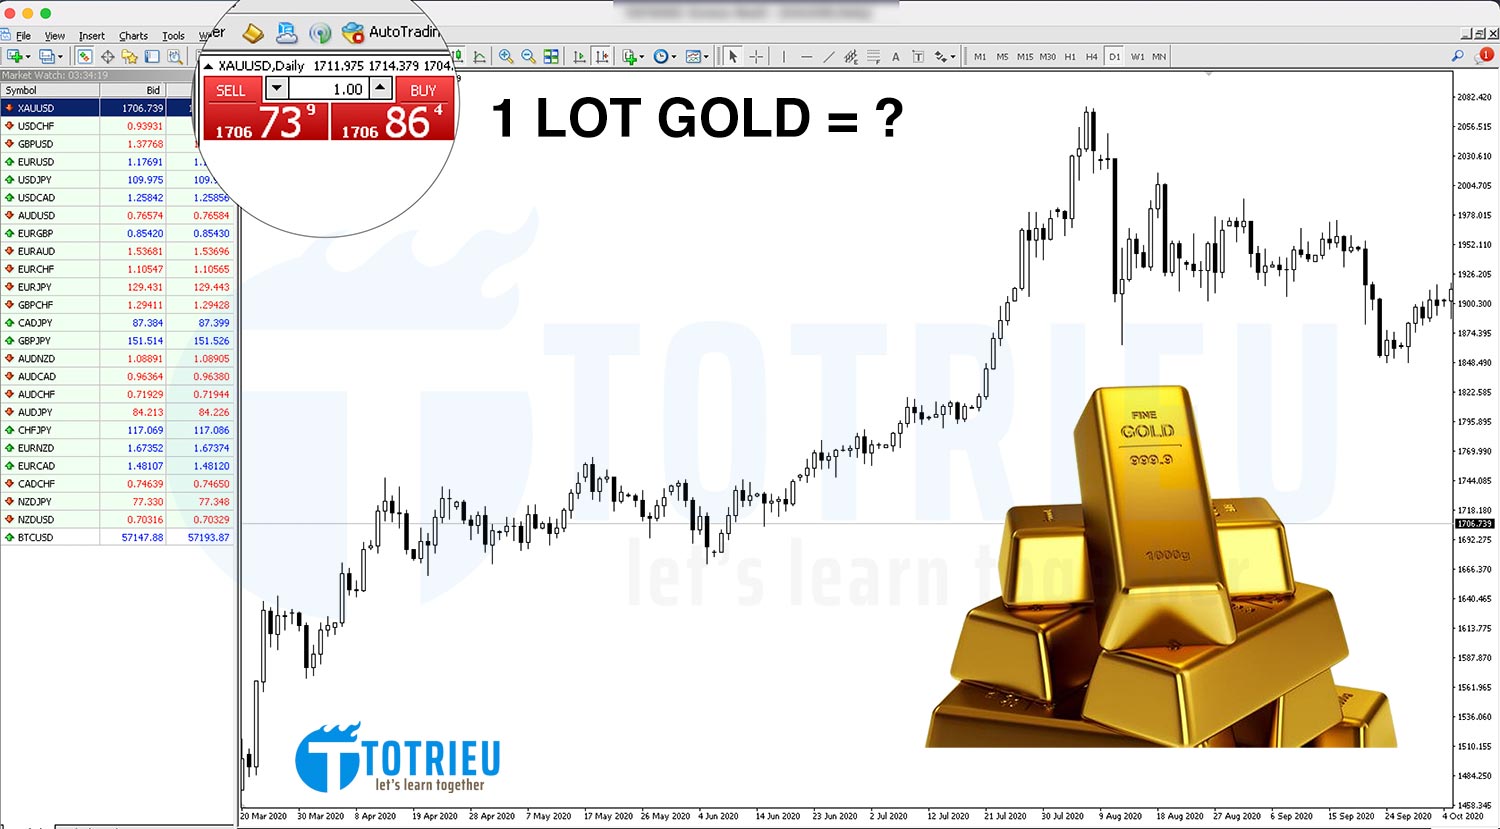 Tìm hiểu pip vàng là gì và cách tính lượng vàng trong thị trường tài chính